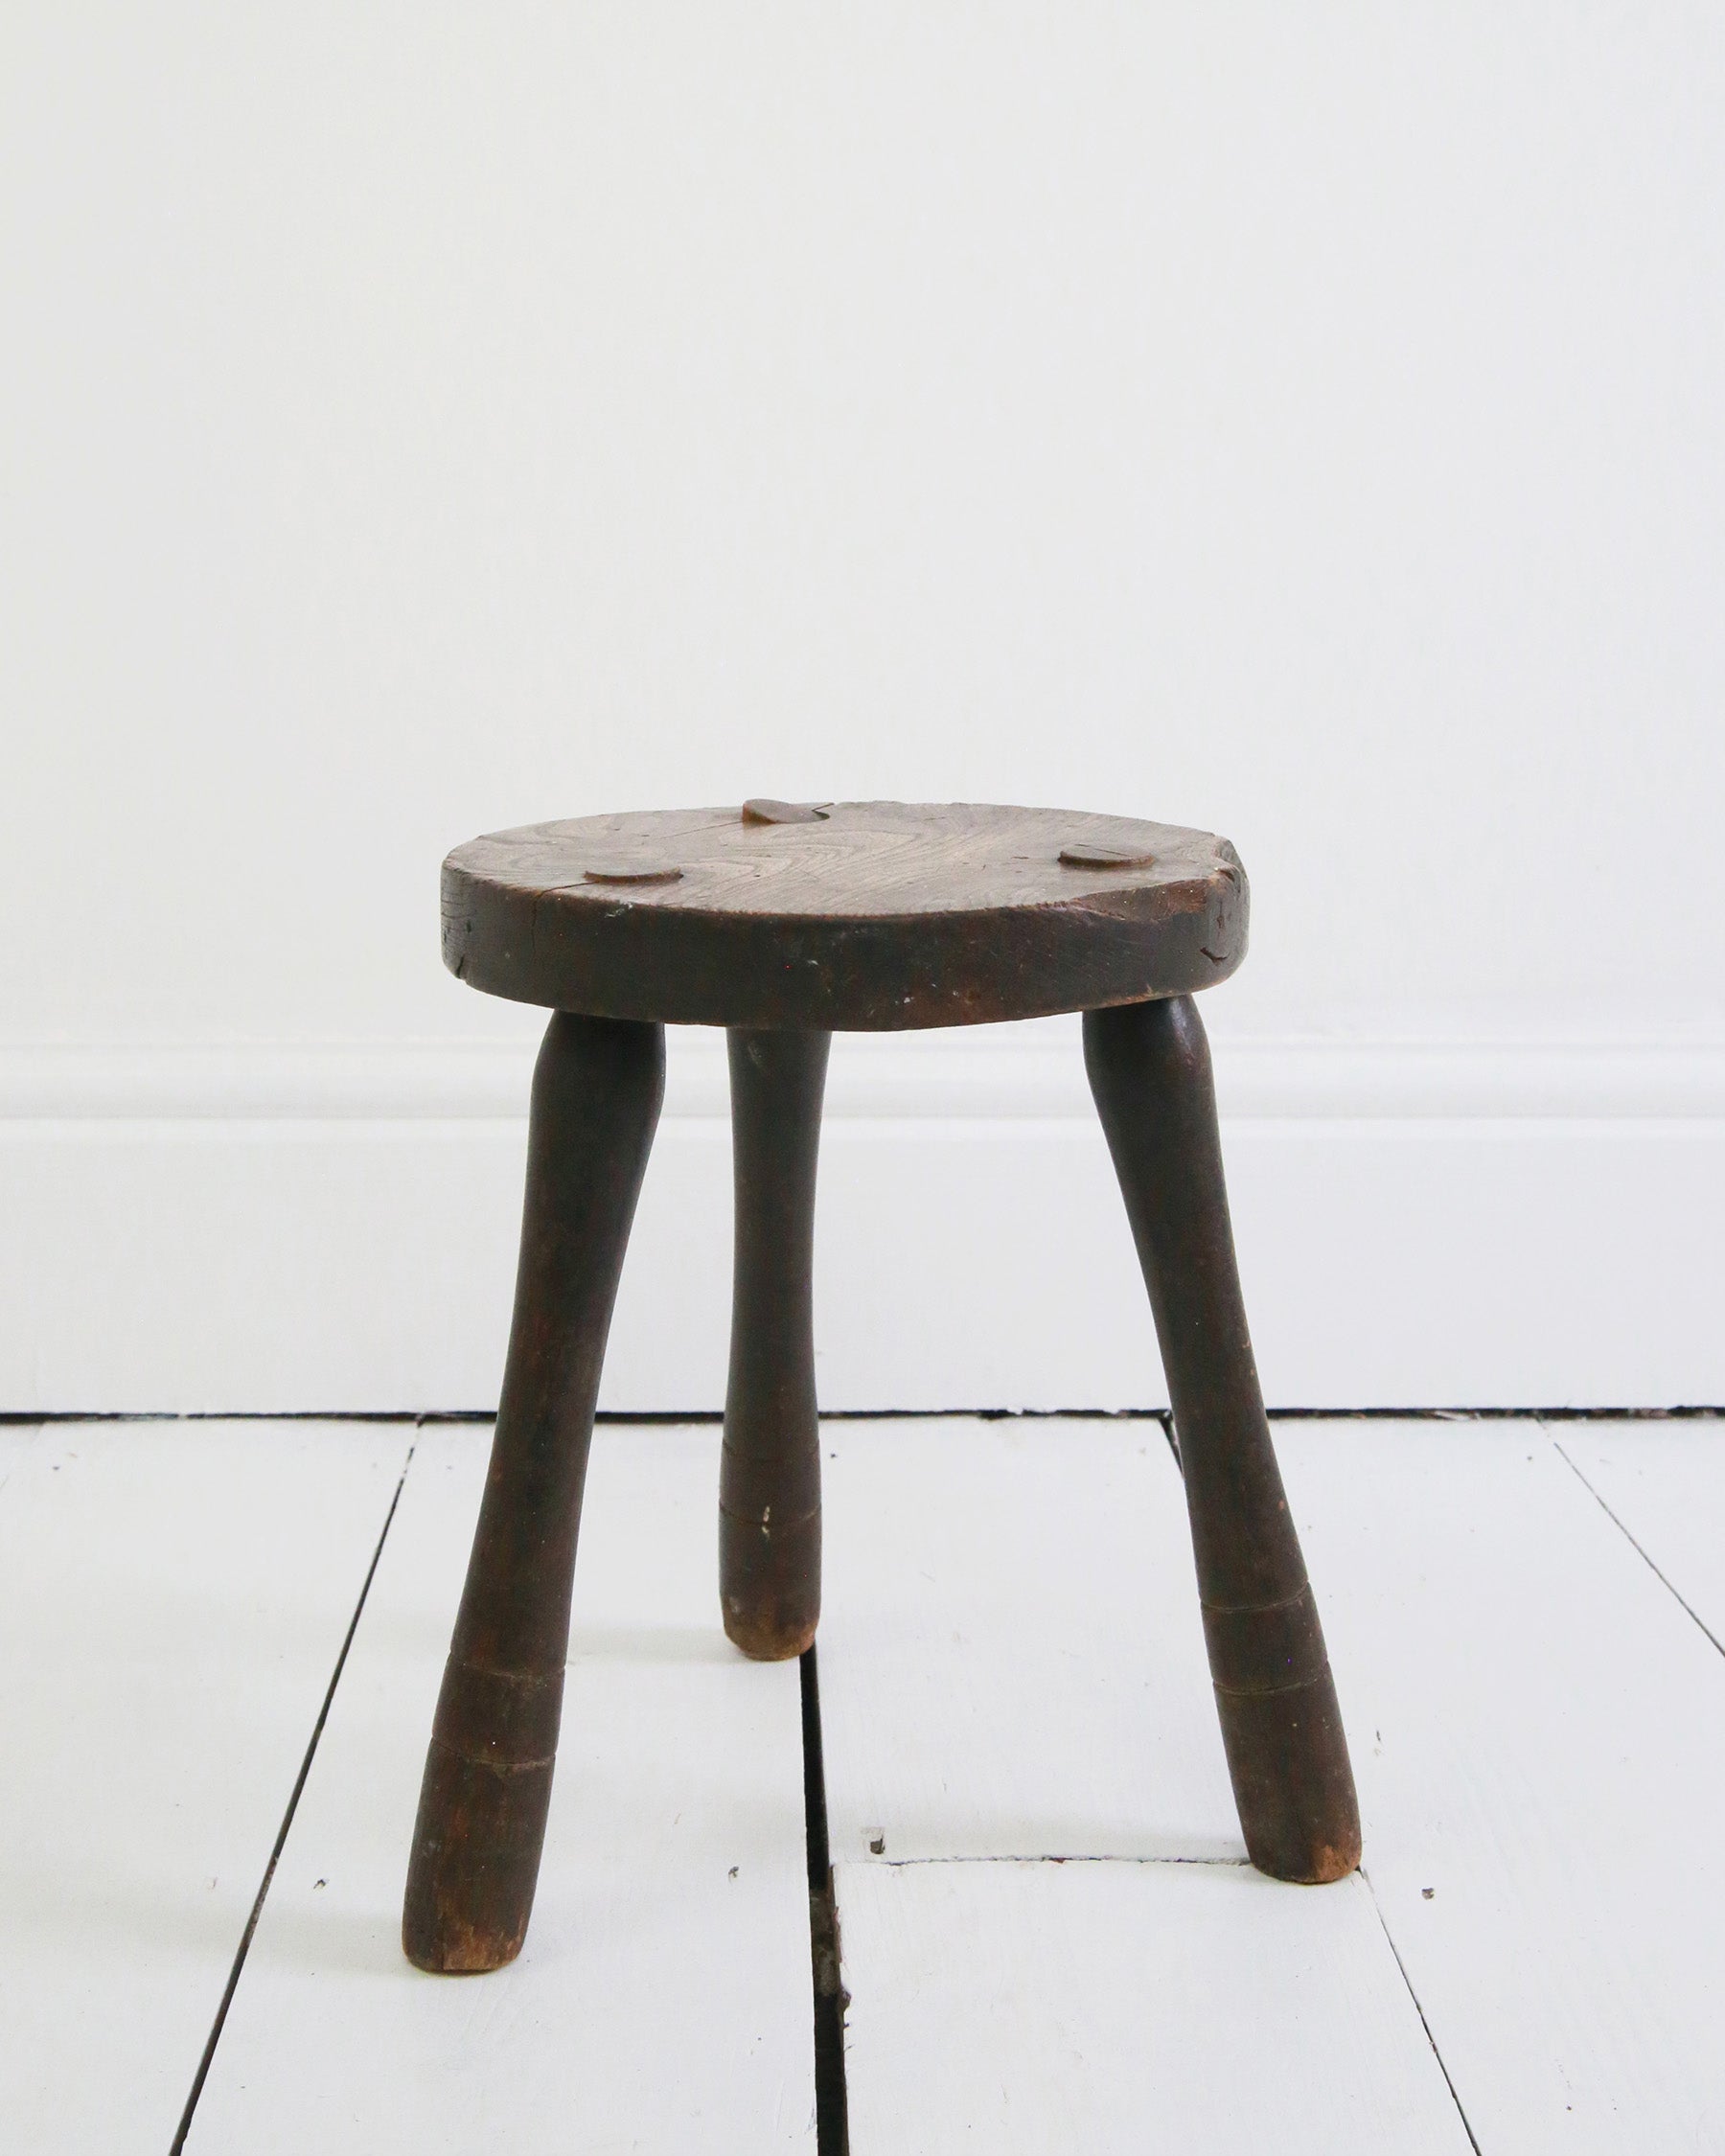 Vintage three legged stool or side table